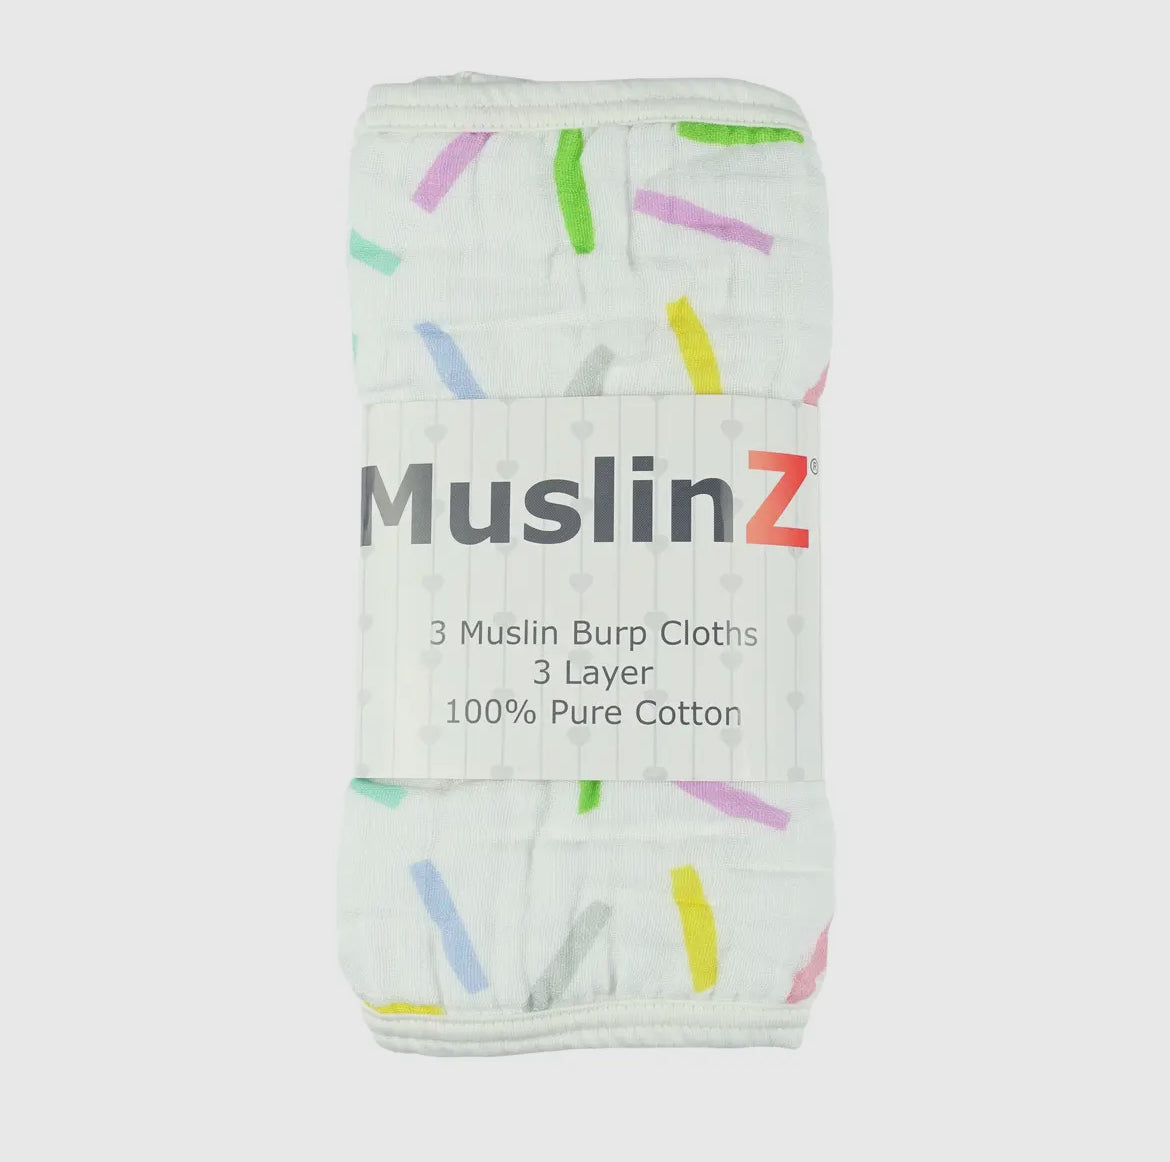 MuslinZ 3 Pack Muslin Burp Cloths 100% Cotton